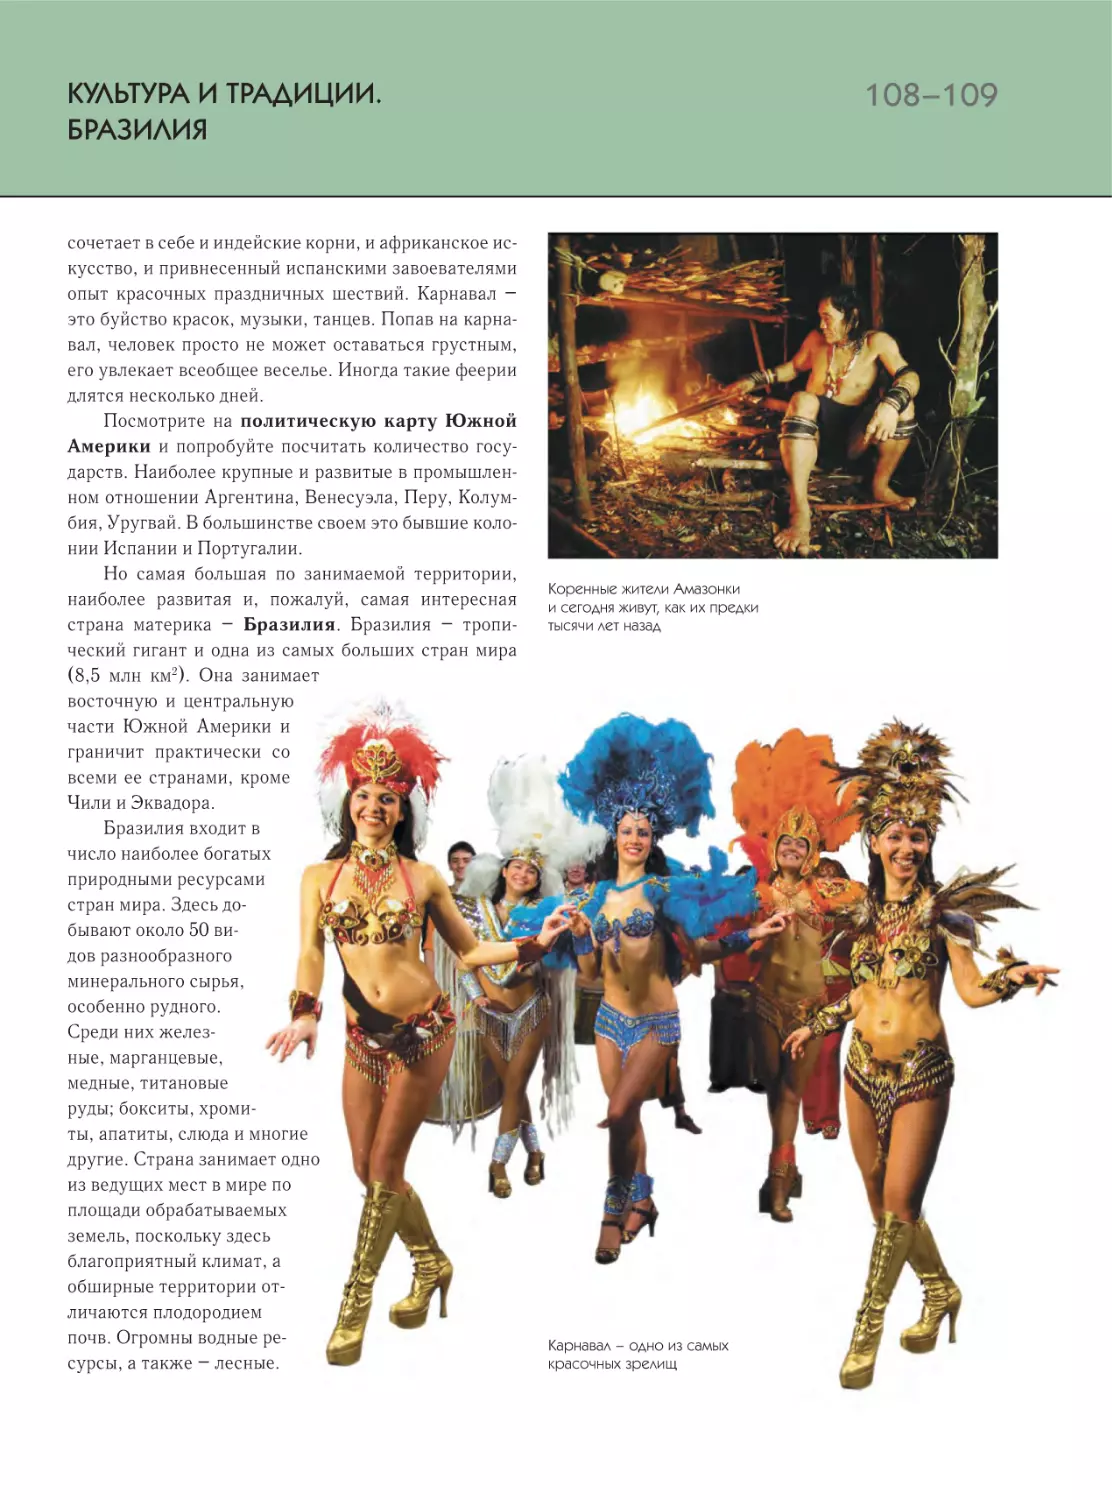 Культура и традиции. Бразилия